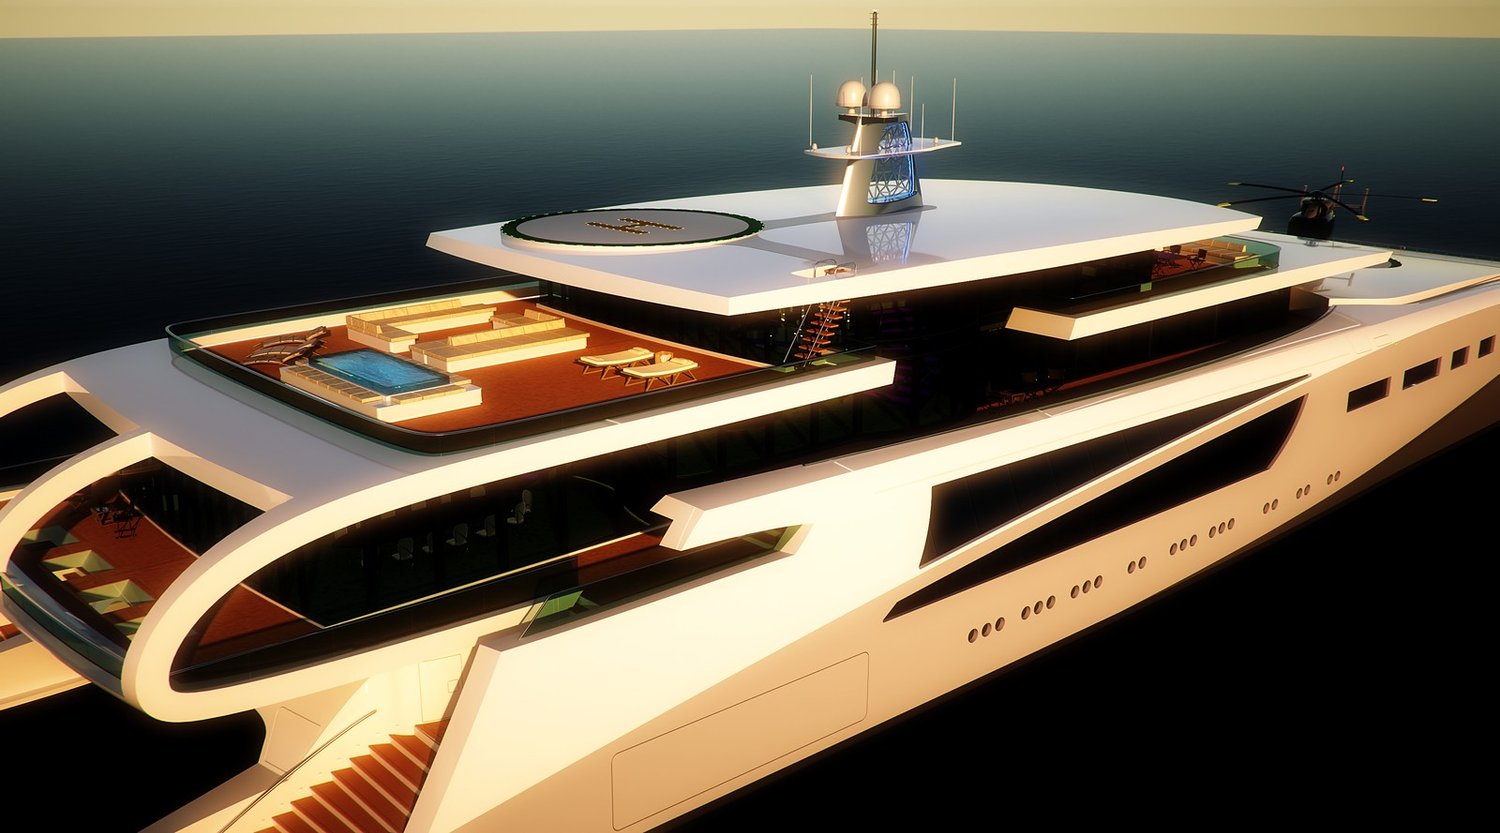 imagen 5 de M Catamaran Concept, el espectacular yate diseñado por Nick Stark.